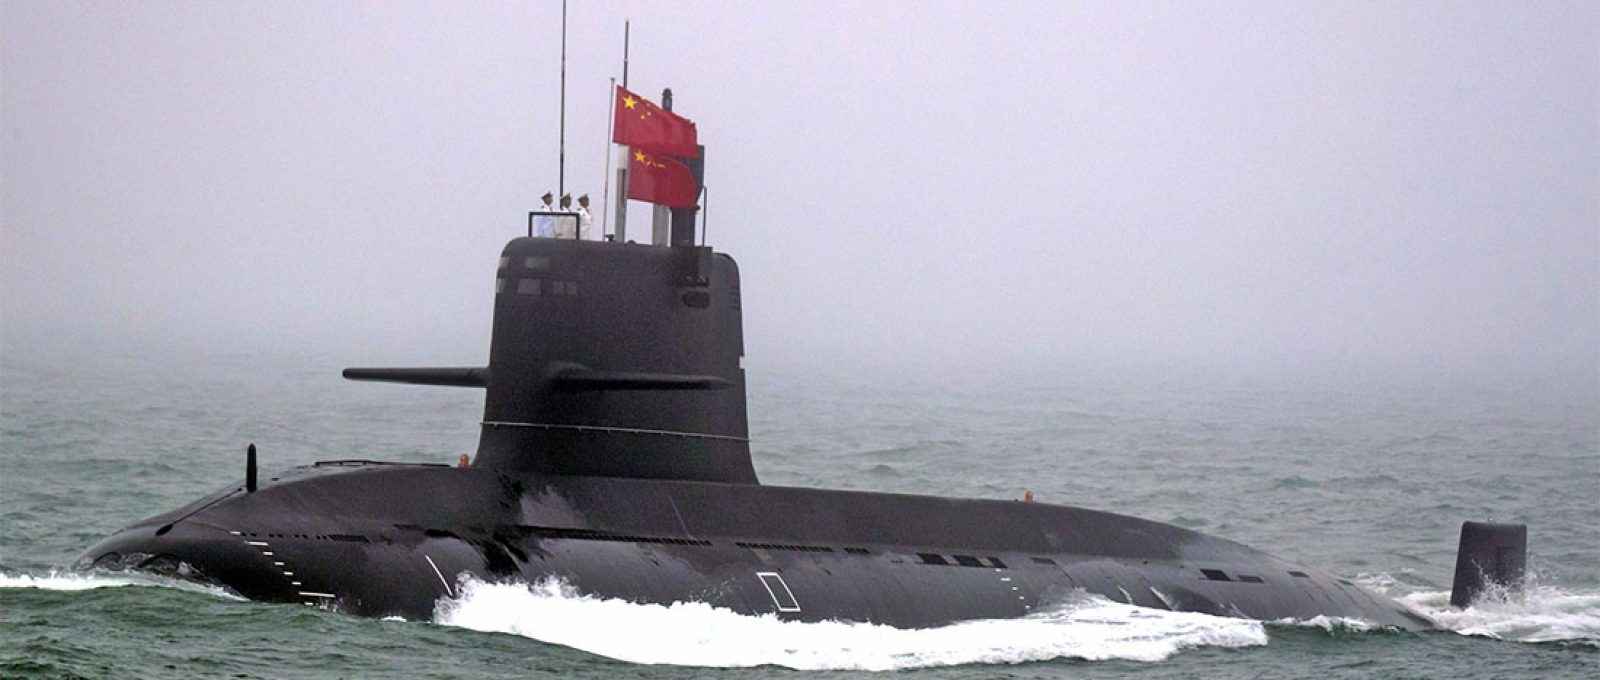 Submarino Great Wall 236 da Marinha do Exército de Libertação Popular da China participa de desfile naval comemorativo do 70º aniversário da fundação da Marinha chinesa perto de Qingdao, Shandong, em 23 de abril de 2019 (Mark Schiefelbein/AFP via Getty Images).